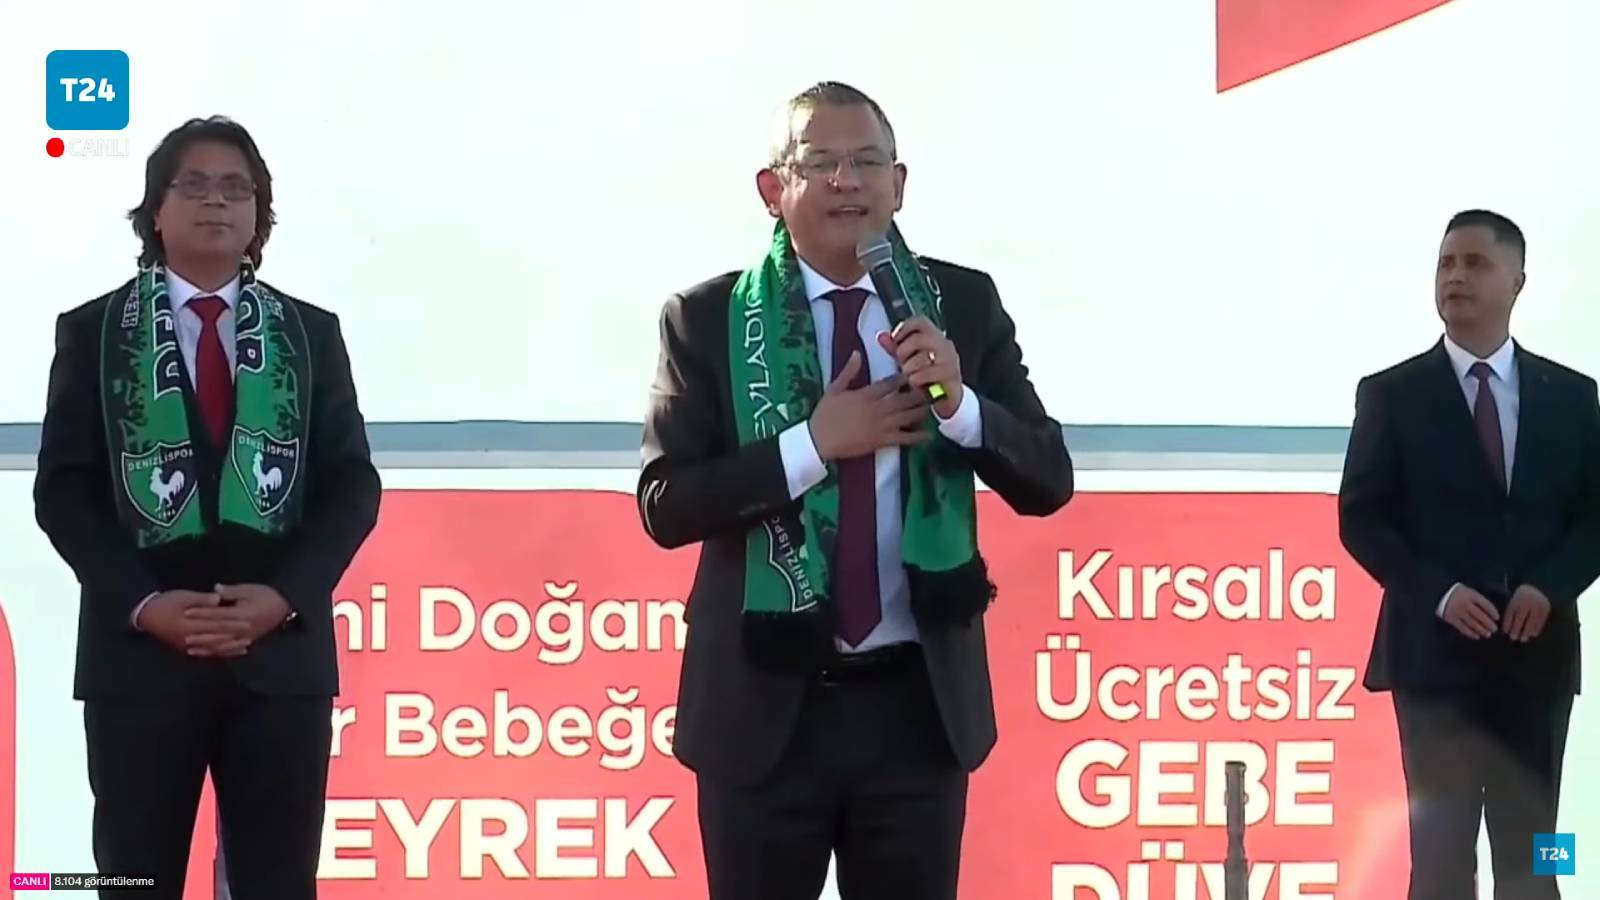 Özgür Özel: CHP'de Ankara'dan gelen telefonla susacak, maden şirketine teslim olacak belediye başkanı, genel başkan bulamazsınız